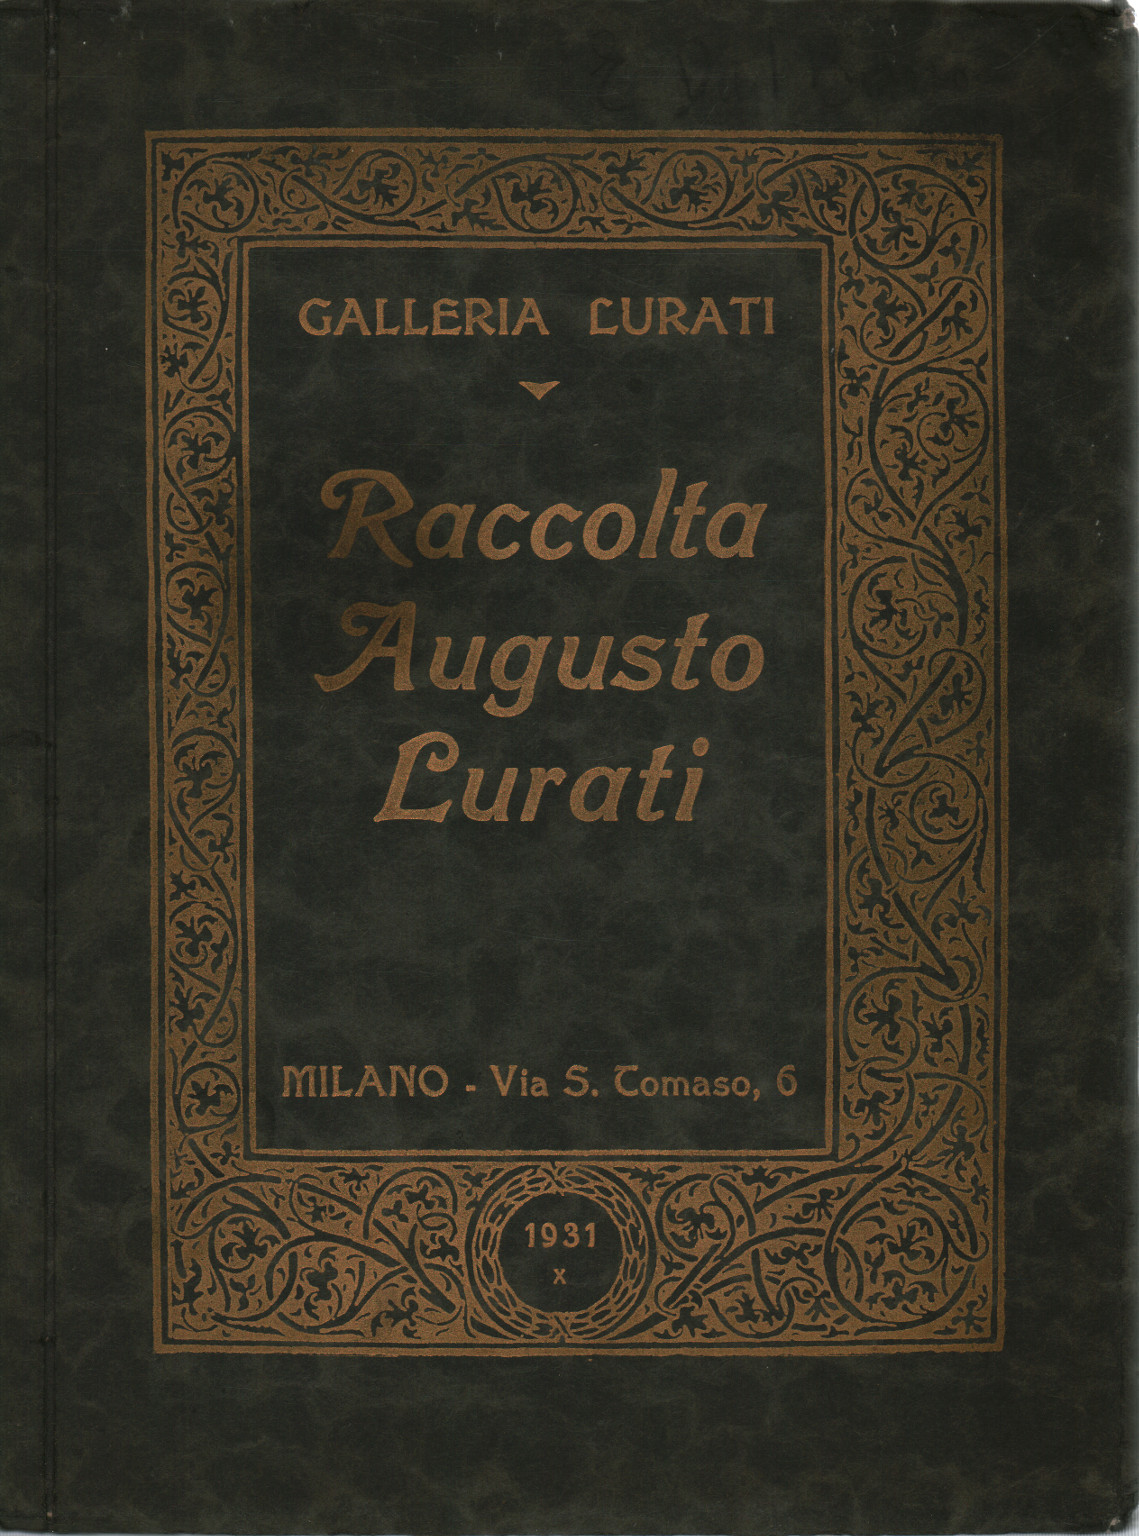 Colección Augusto Lurati, s.a.